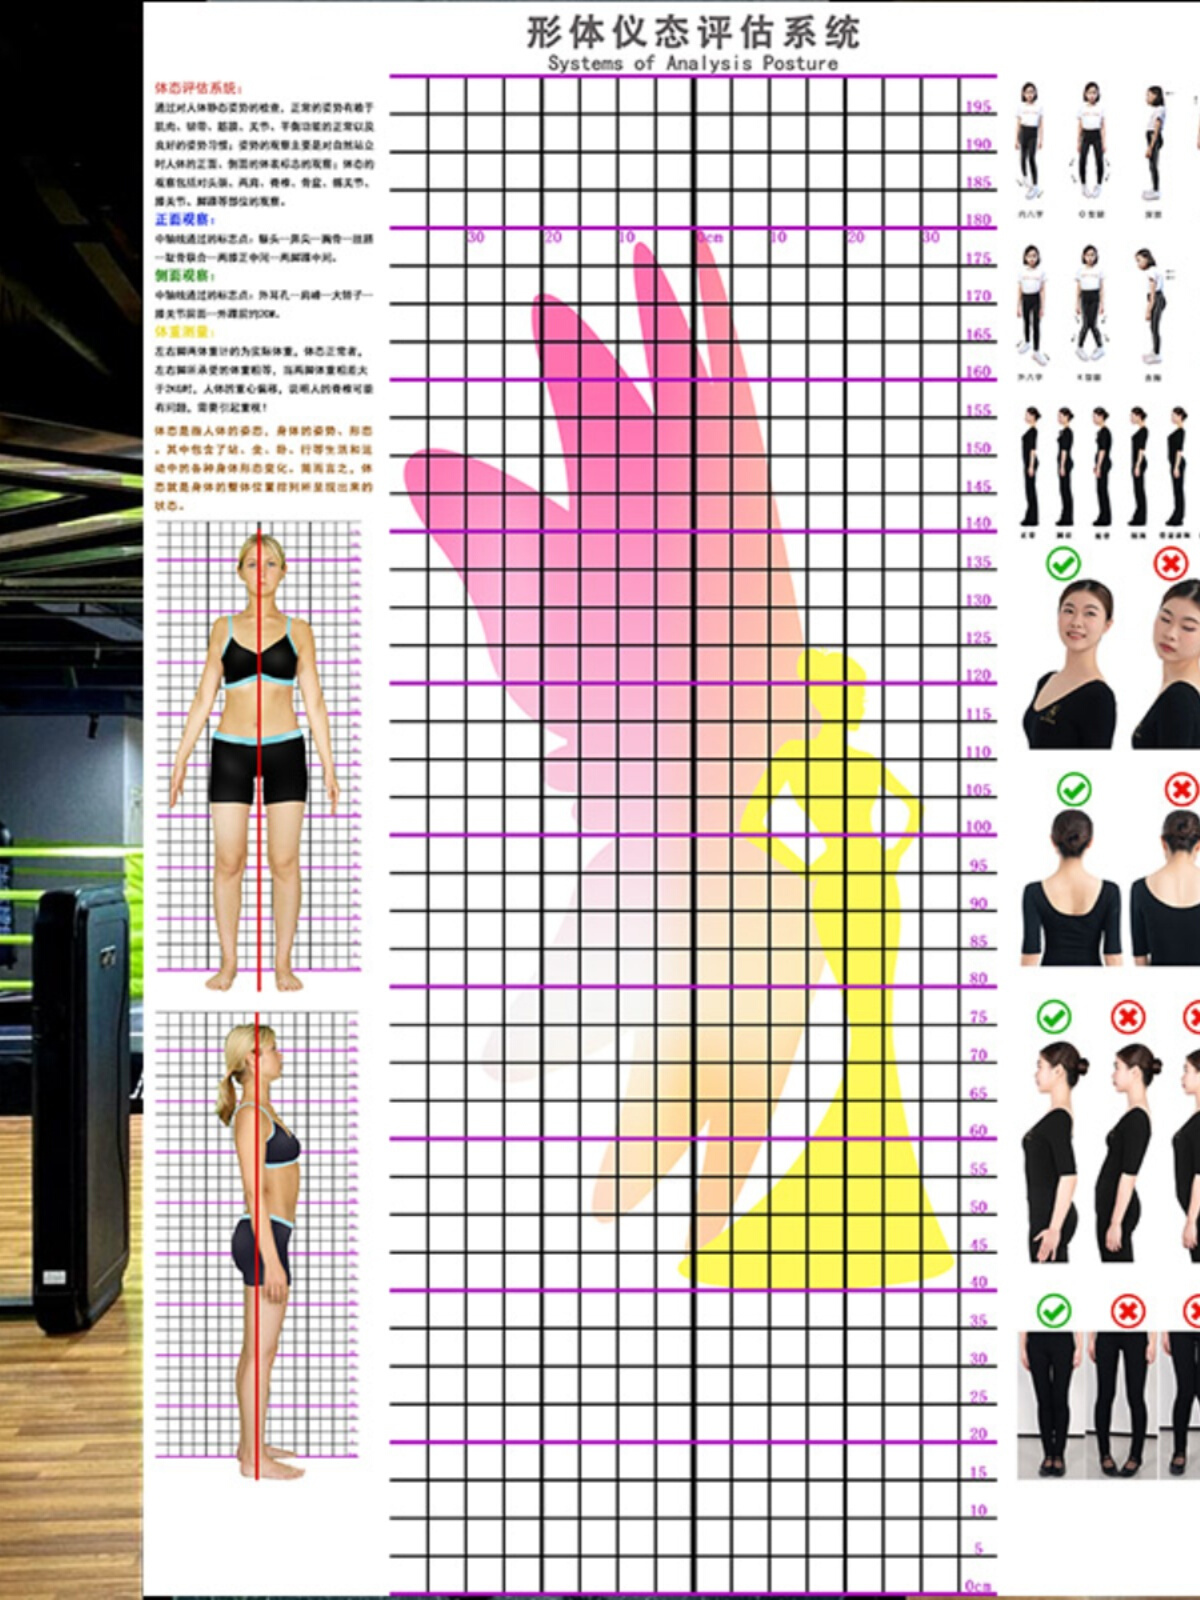 仪态形体纠正评估表舞蹈健美操模特礼仪体态姿势分析对比体态图表